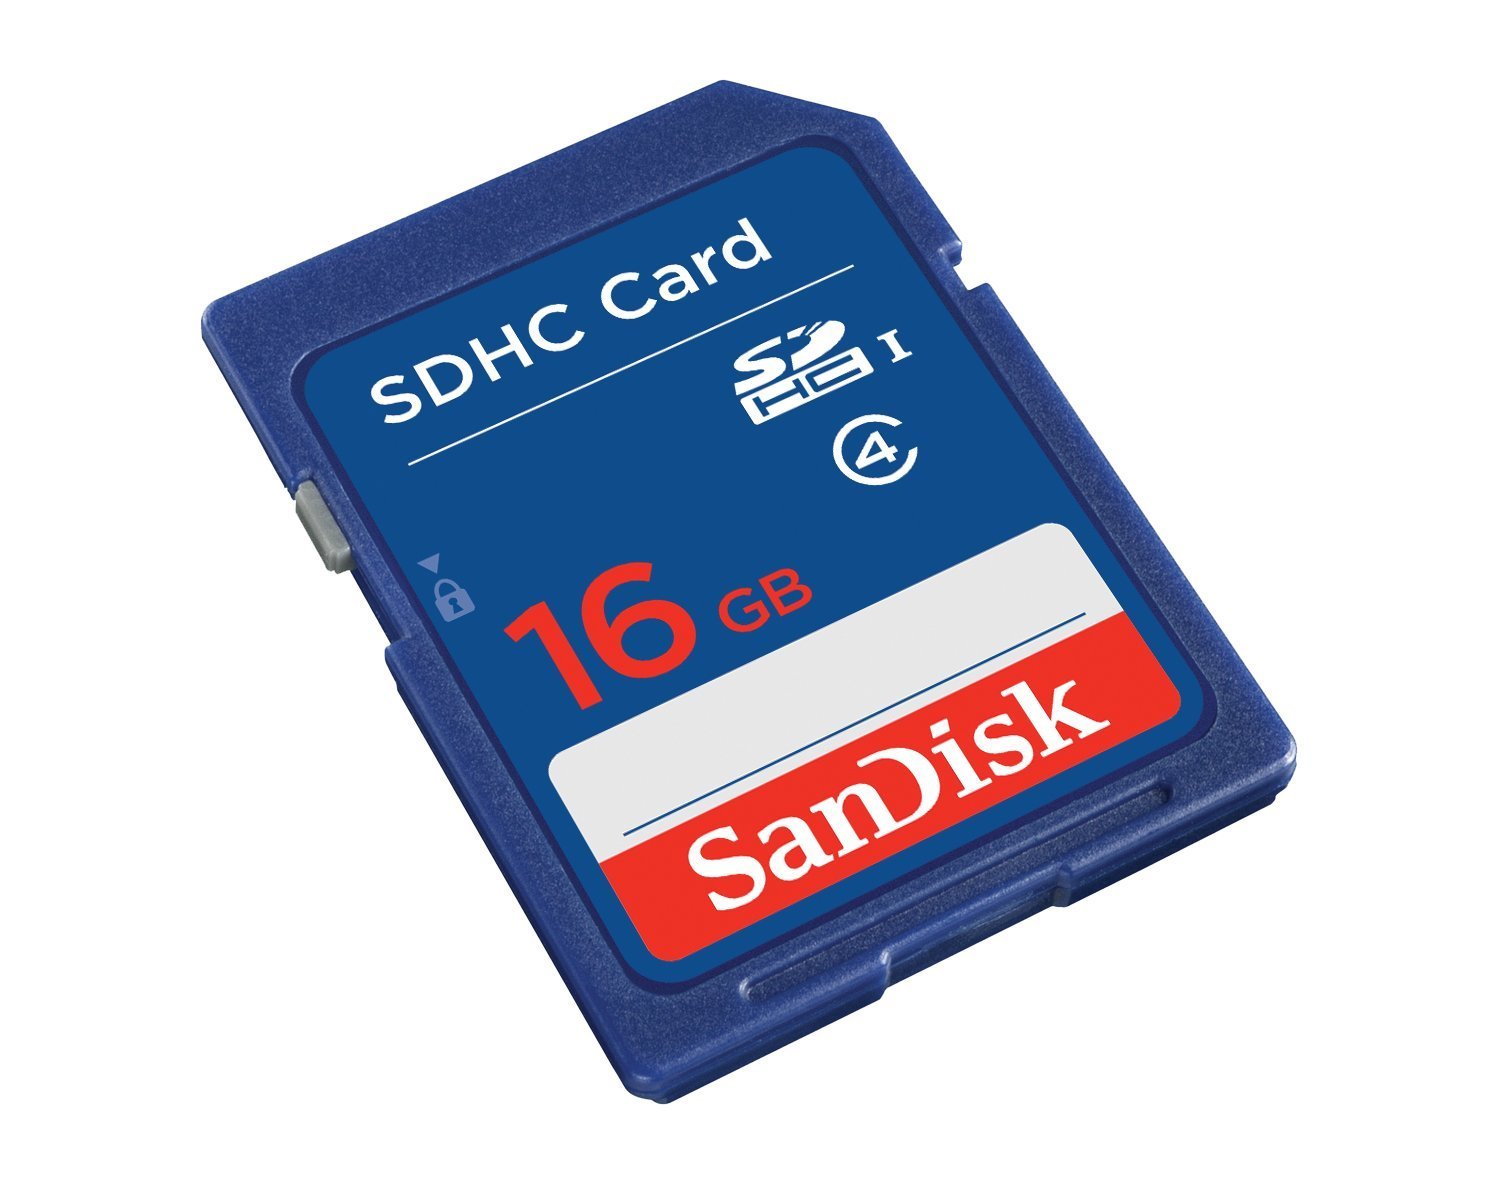 SanDisk SDSDB016GB35M SDHC 16GB Blister Pkg 3x5 Class 4